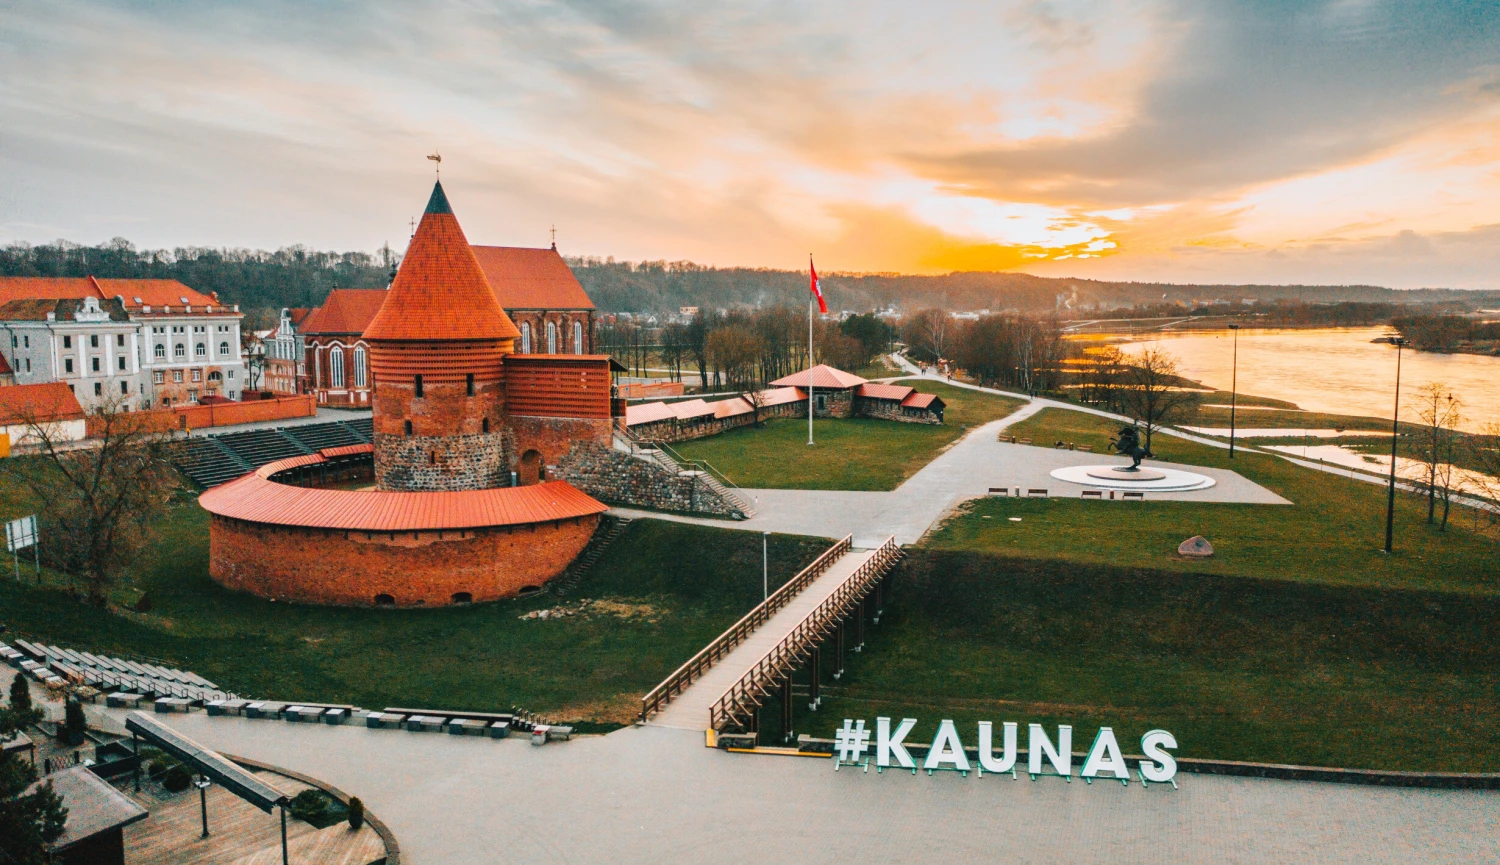 Kaunastické! Aneb proč stojí za to navštívit druhé největší město Litvy